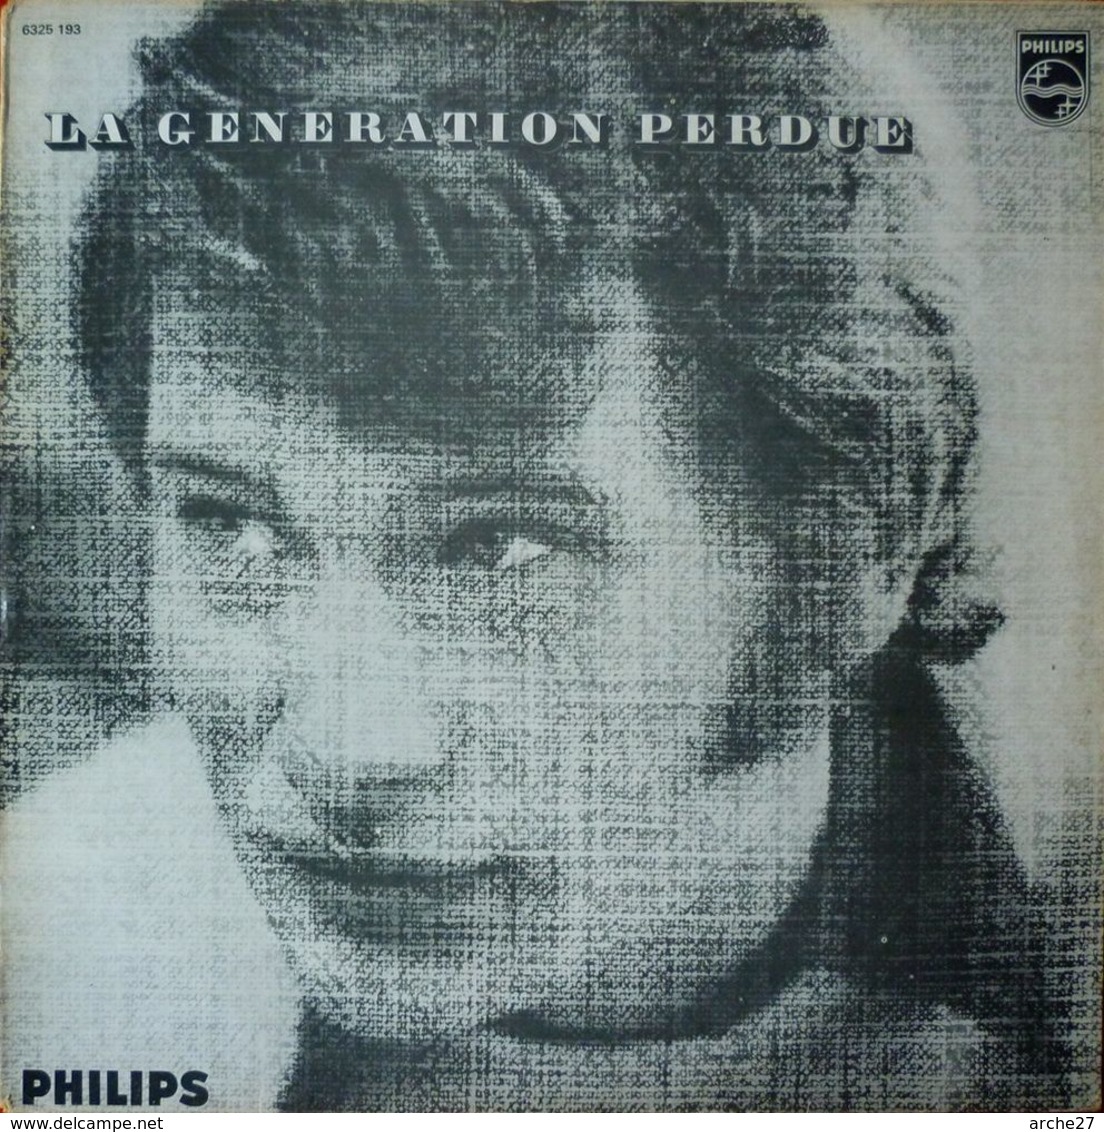 JOHNNY HALLYDAY - LP - 33T - Disque Vinyle - La Génération Perdue - 6325 193 - Rock